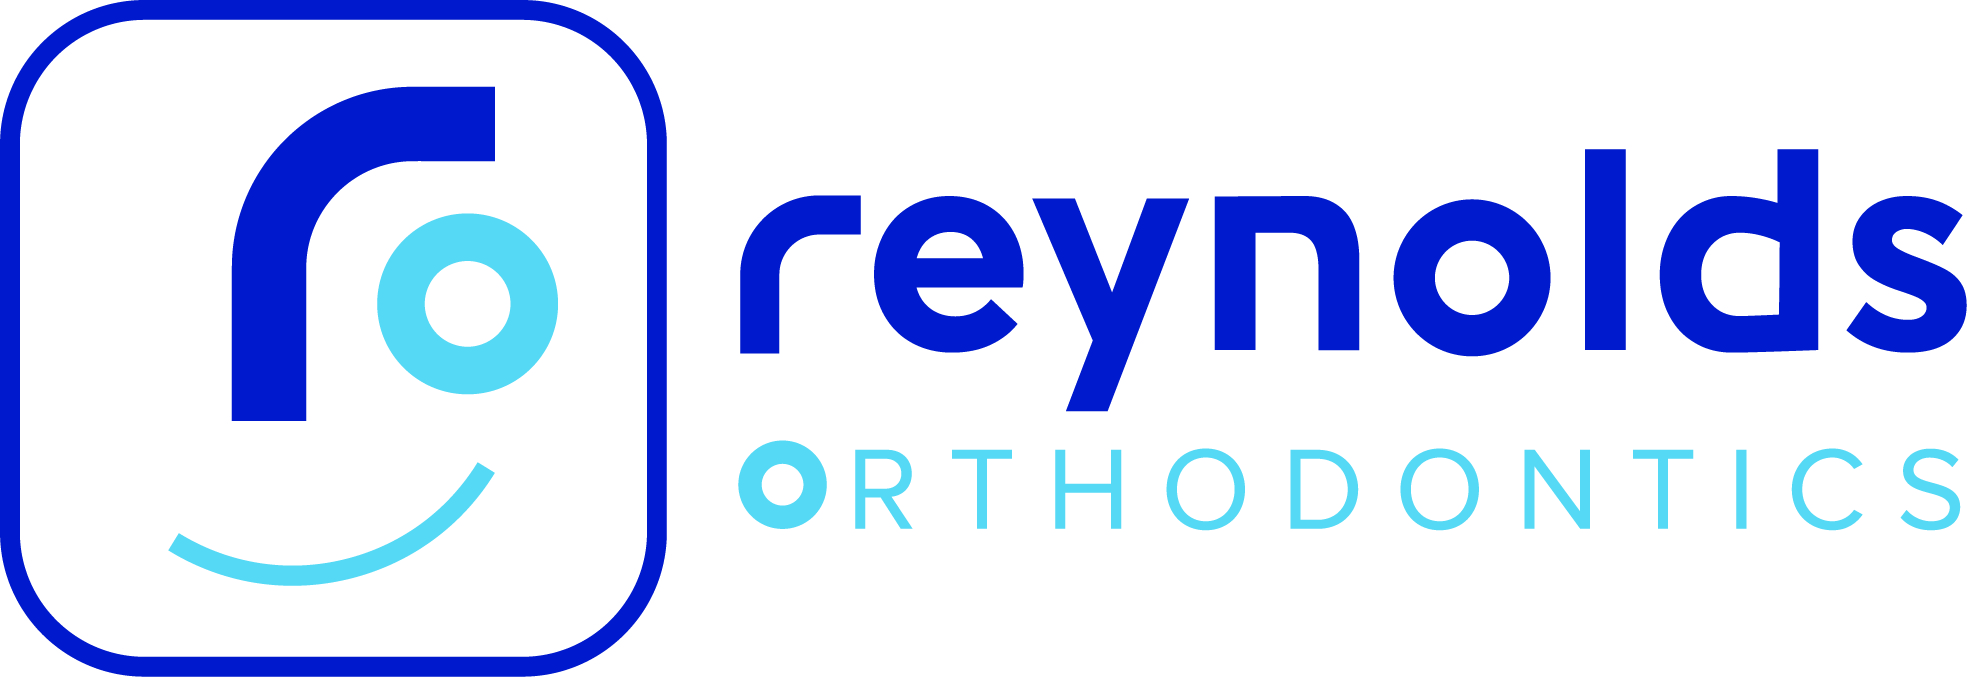 Logo of Reynolds Orthodontics